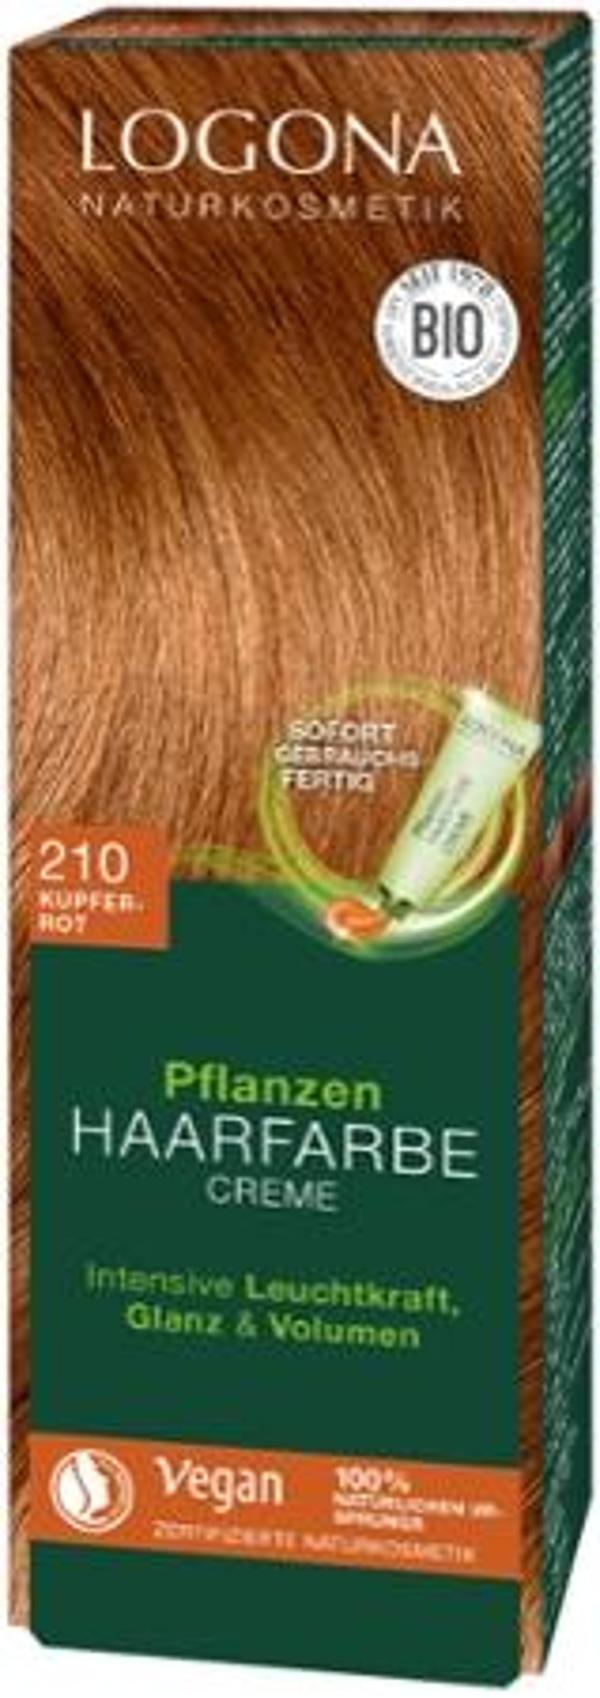 Produktfoto zu Pflanzen Haarfarbe Creme 210 kupferrot